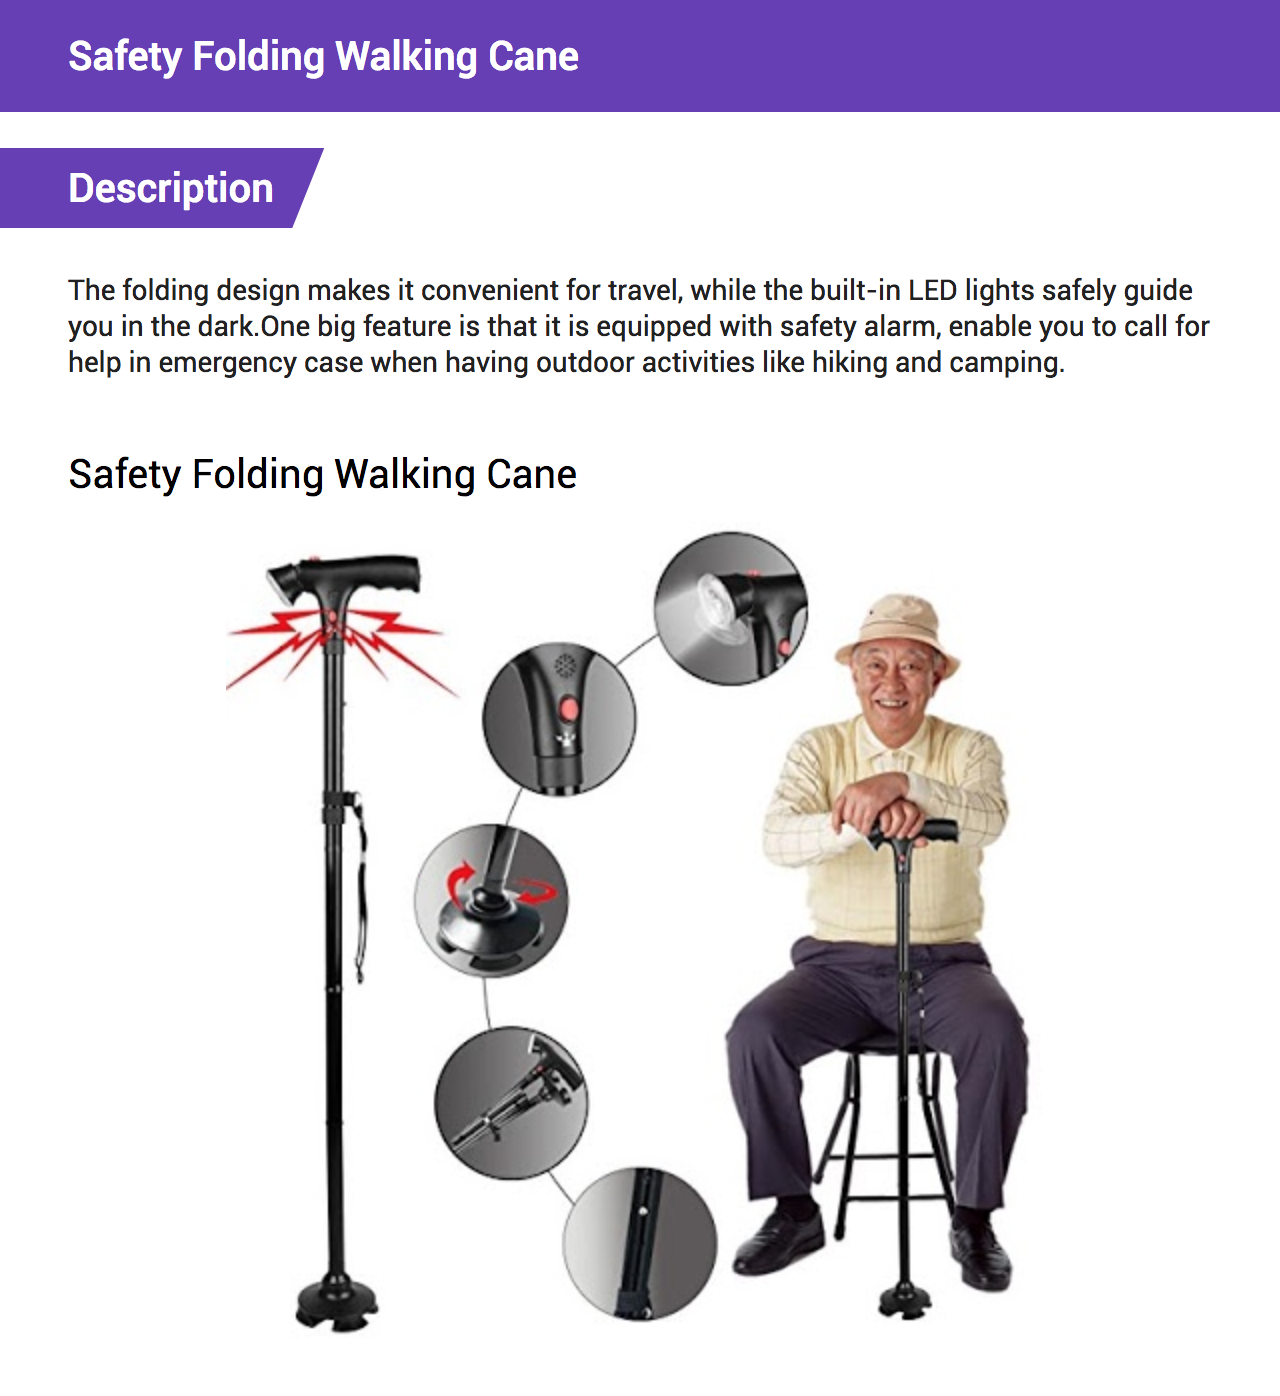 Safety Folding Walking Cane